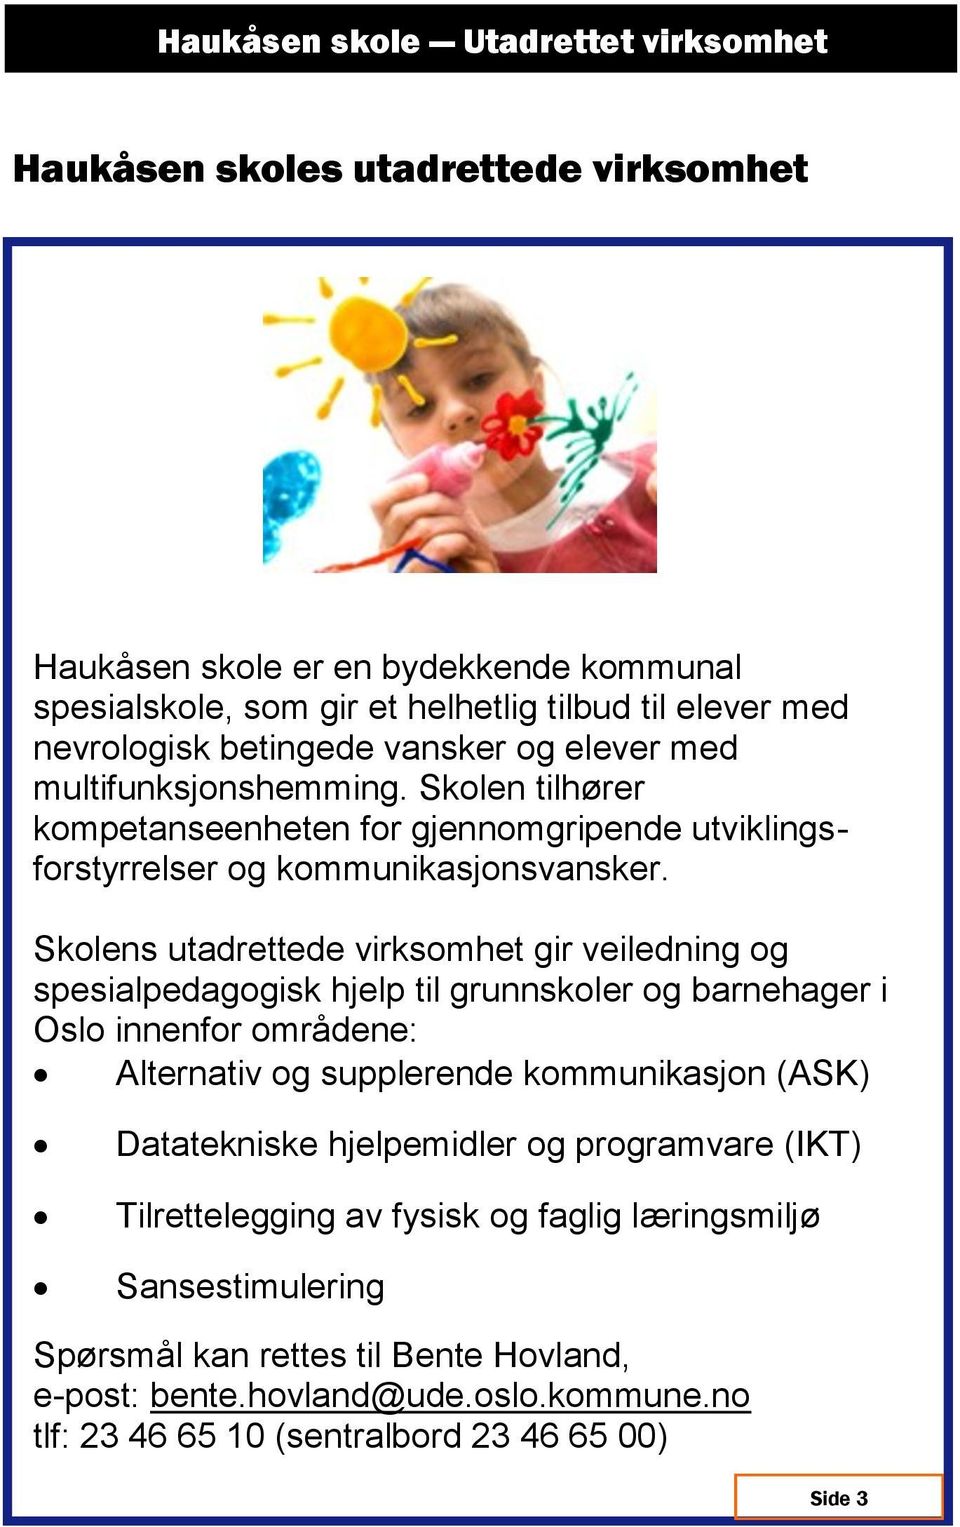 Skolens utadrettede virksomhet gir veiledning og spesialpedagogisk hjelp til grunnskoler og barnehager i Oslo innenfor områdene: Alternativ og supplerende kommunikasjon (ASK)